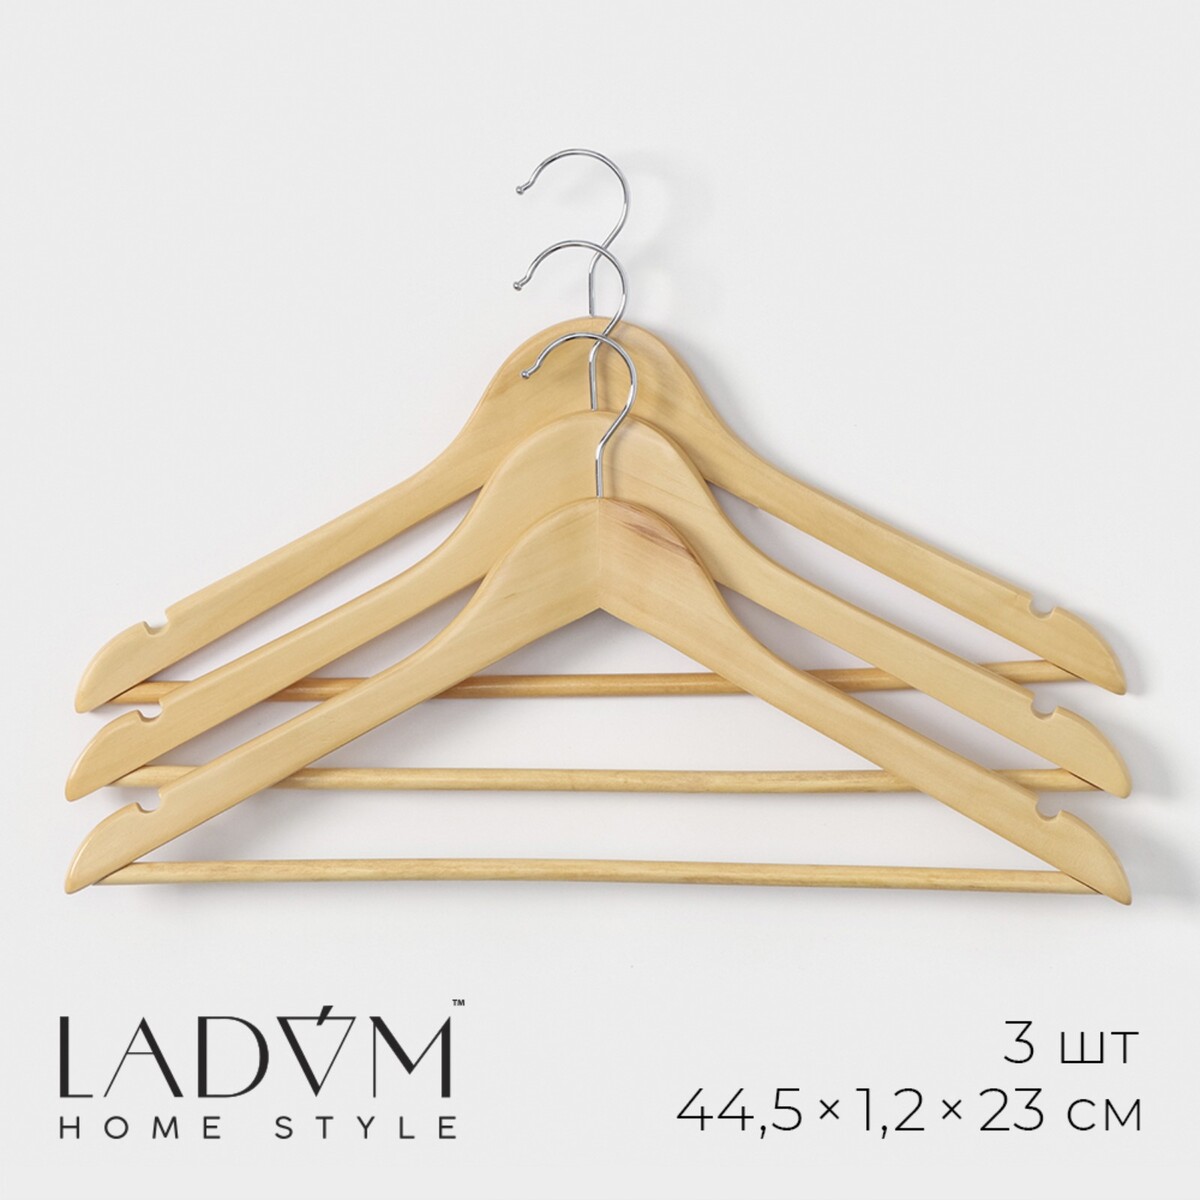 Плечики - вешалки деревянные для одежды с перекладиной ladо́m bois, 44,5×1,2×23 см, 3 шт, сорт а, цвет светлое дерево woodcoon деревянные вешалки зайчики